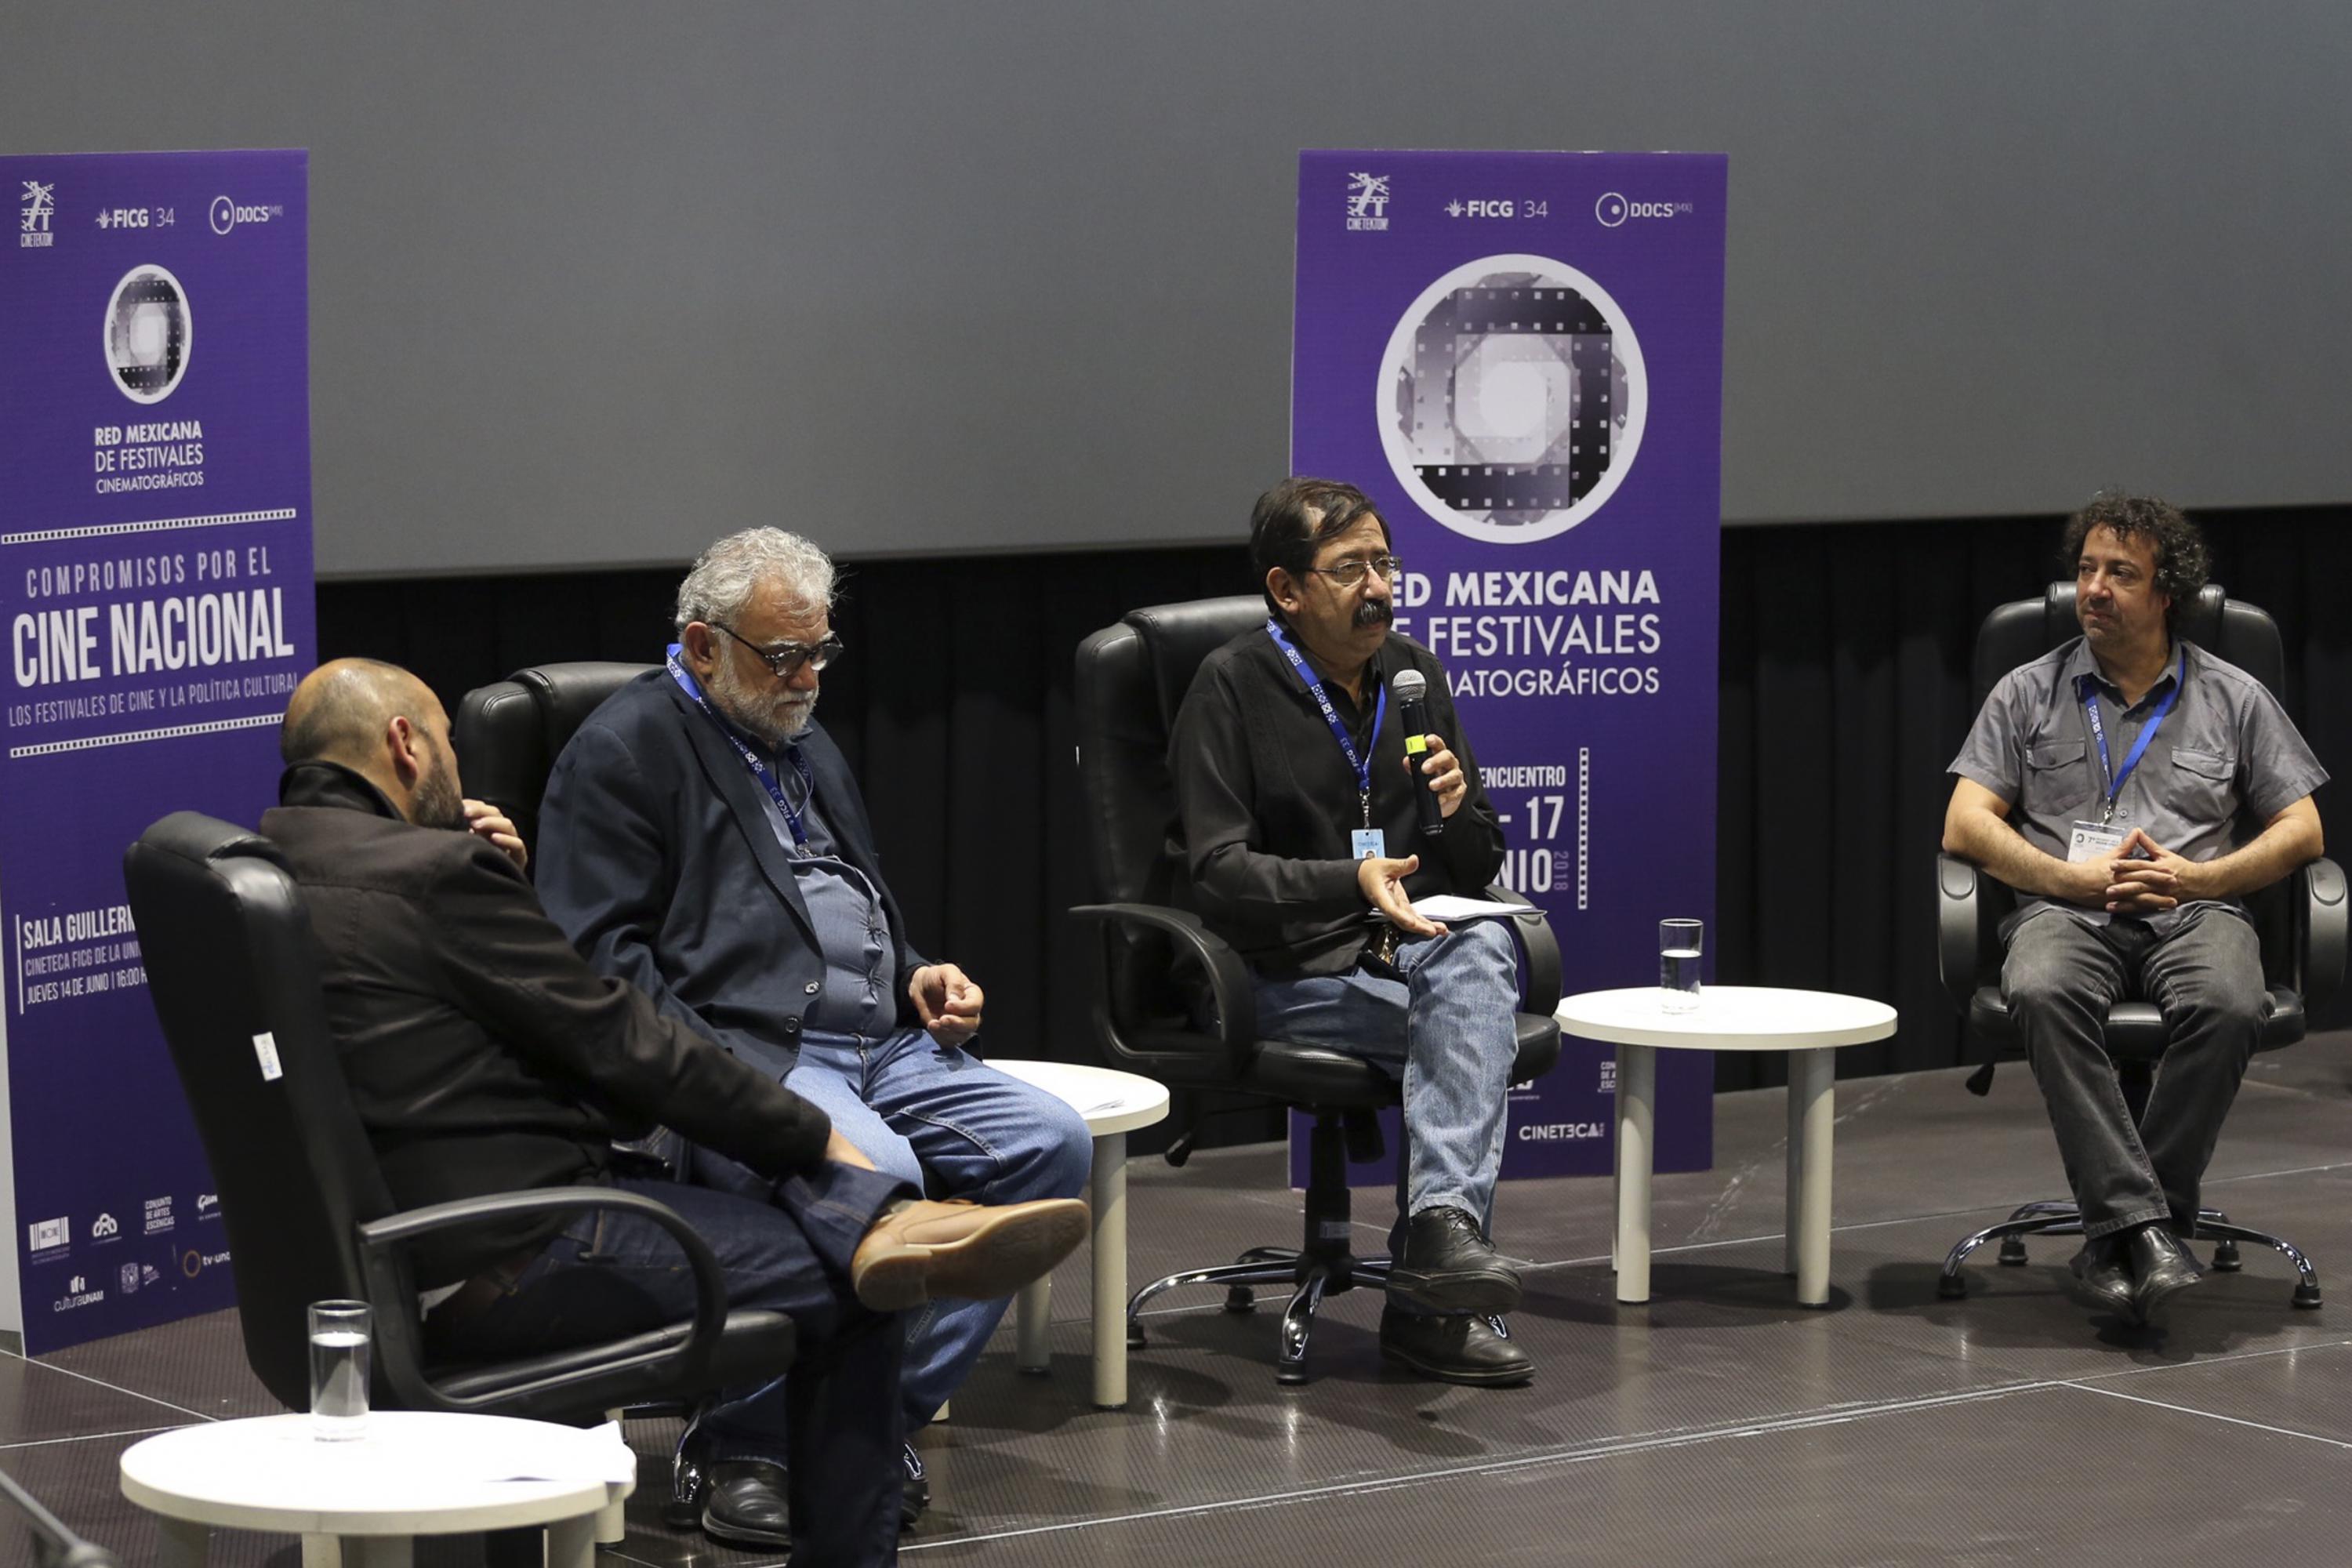 Se realizo una charla en la sala Guillermo del Toro de la Cineteca de Guadalajara